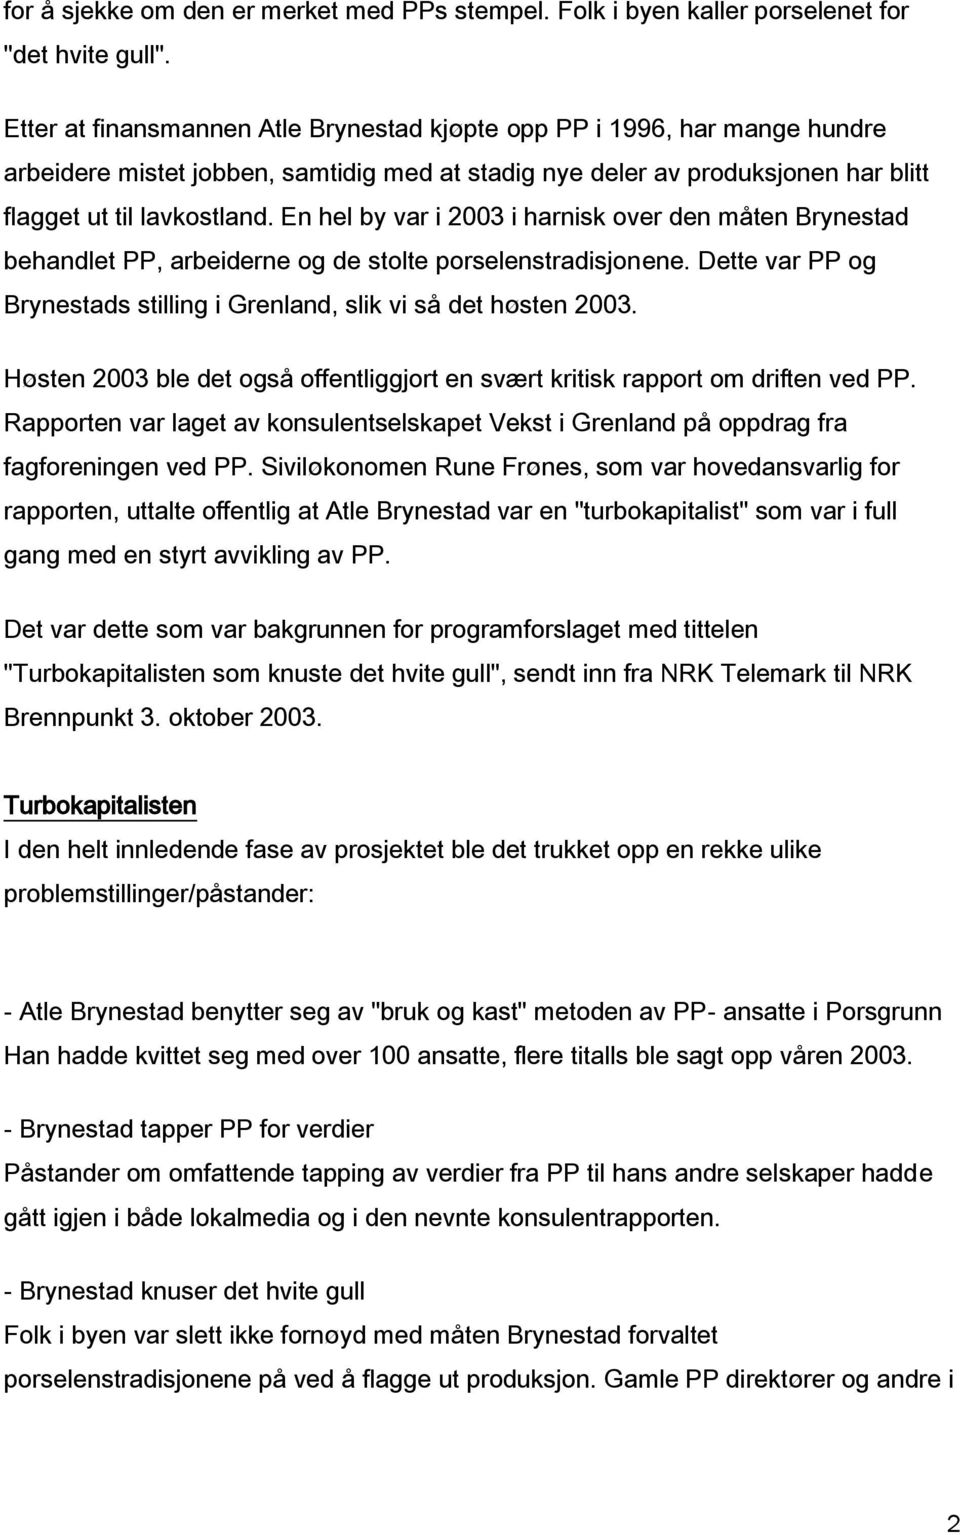 En hel by var i 2003 i harnisk over den måten Brynestad behandlet PP, arbeiderne og de stolte porselenstradisjonene. Dette var PP og Brynestads stilling i Grenland, slik vi så det høsten 2003.